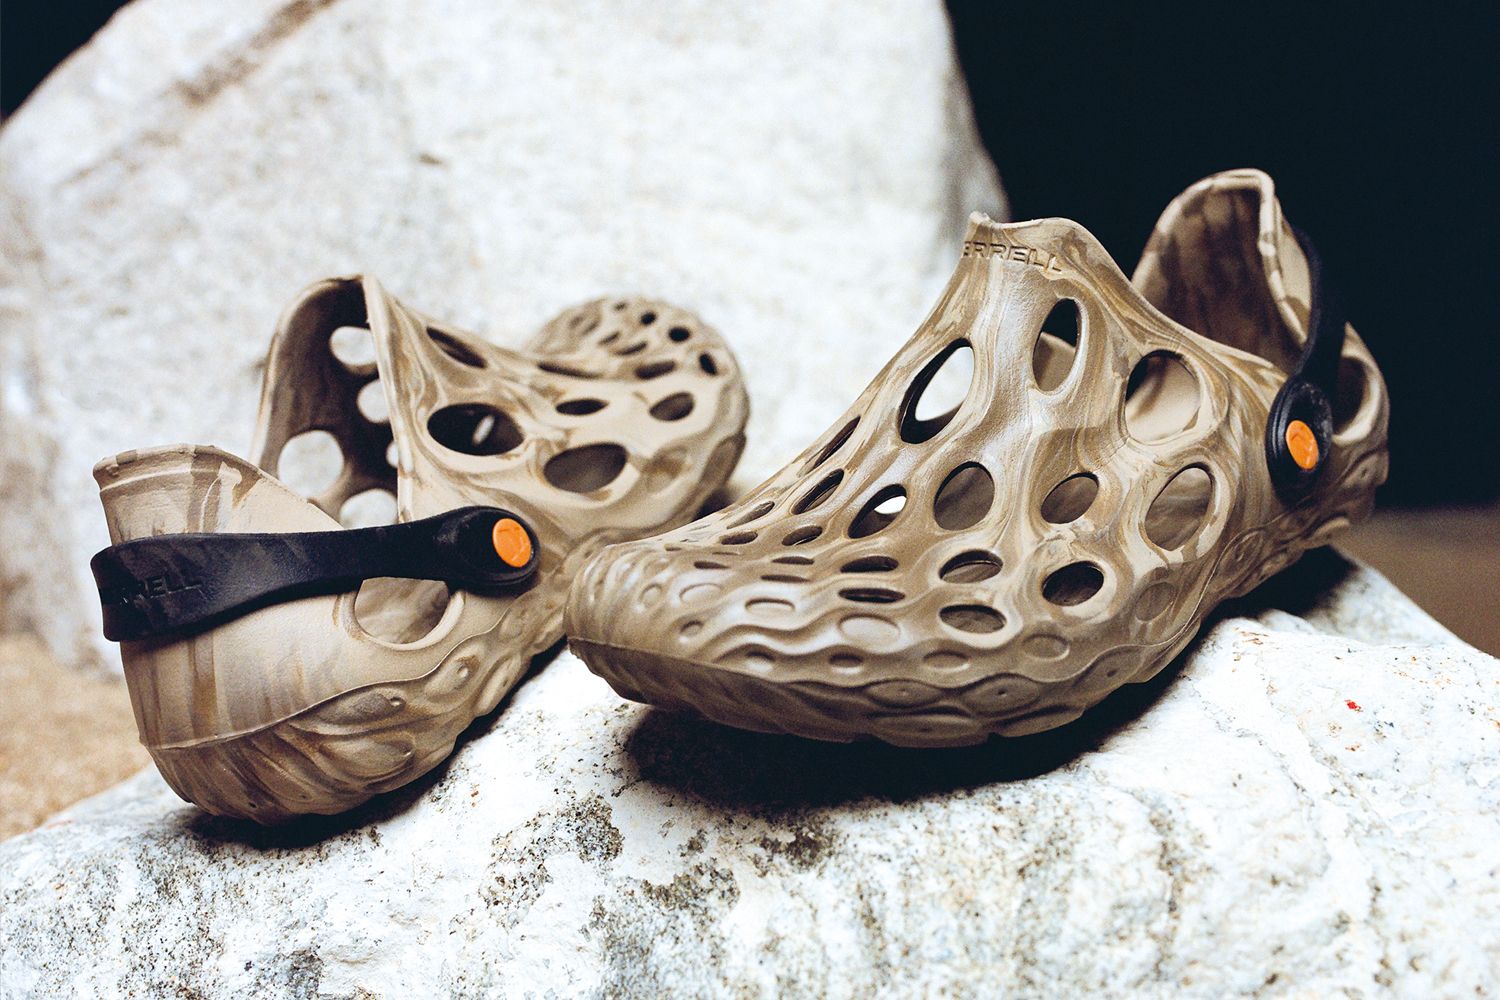 birkenstock-crocs-injection-moulded-shoes